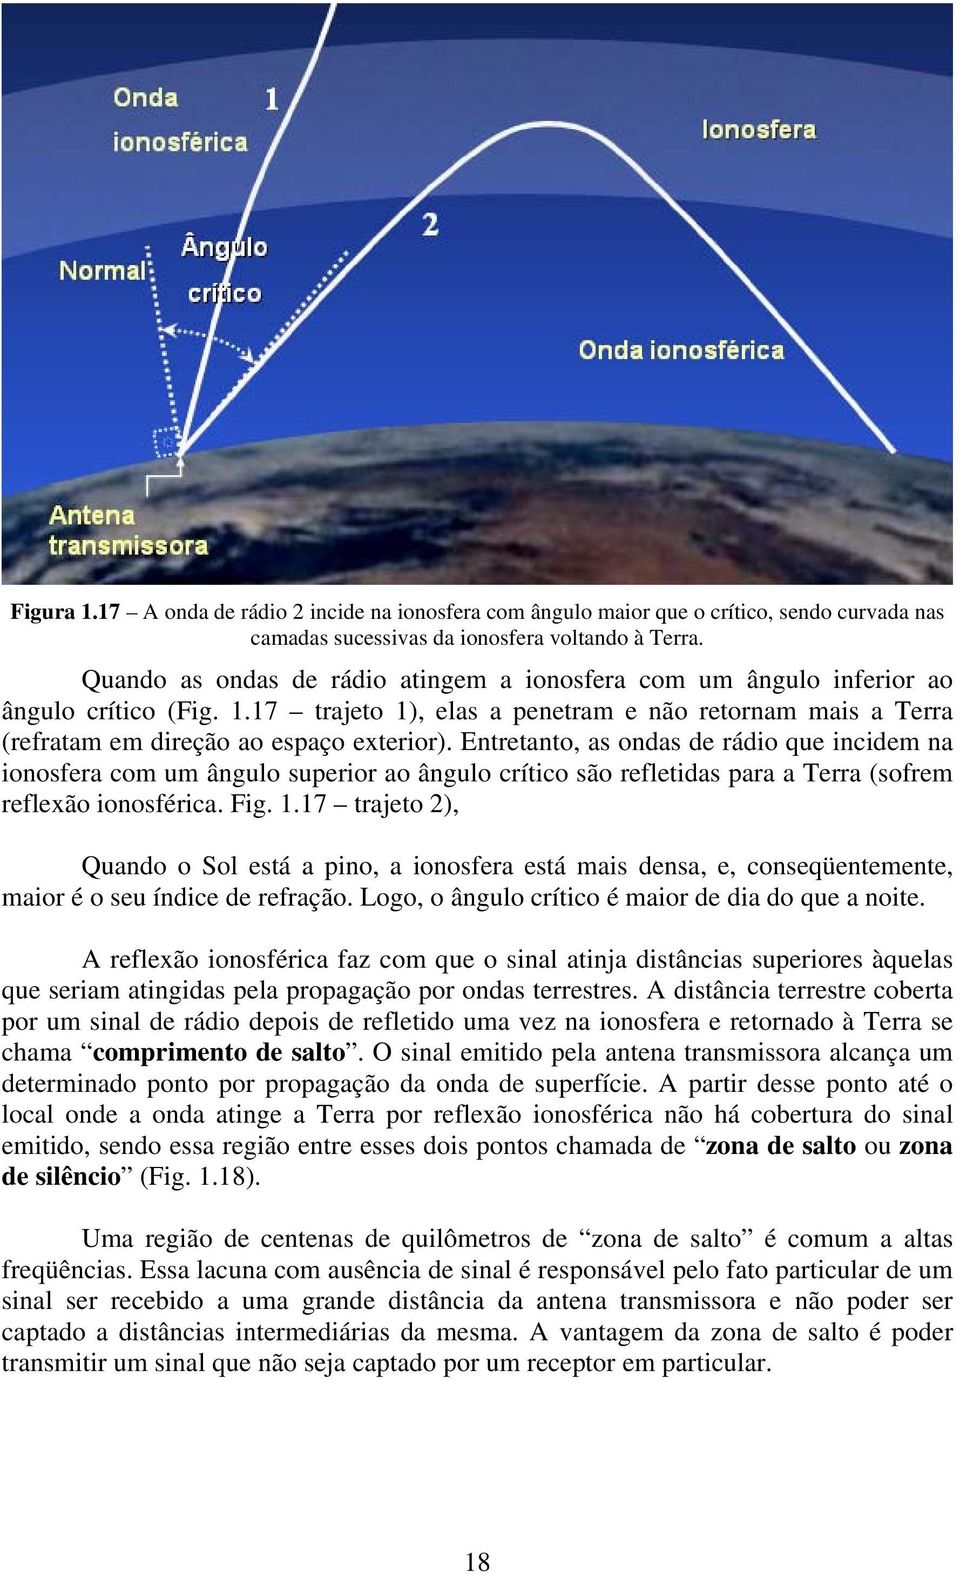 Entretanto, as ondas de rádio que incidem na ionosfera com um ângulo superior ao ângulo crítico são refletidas para a Terra (sofrem reflexão ionosférica. Fig. 1.